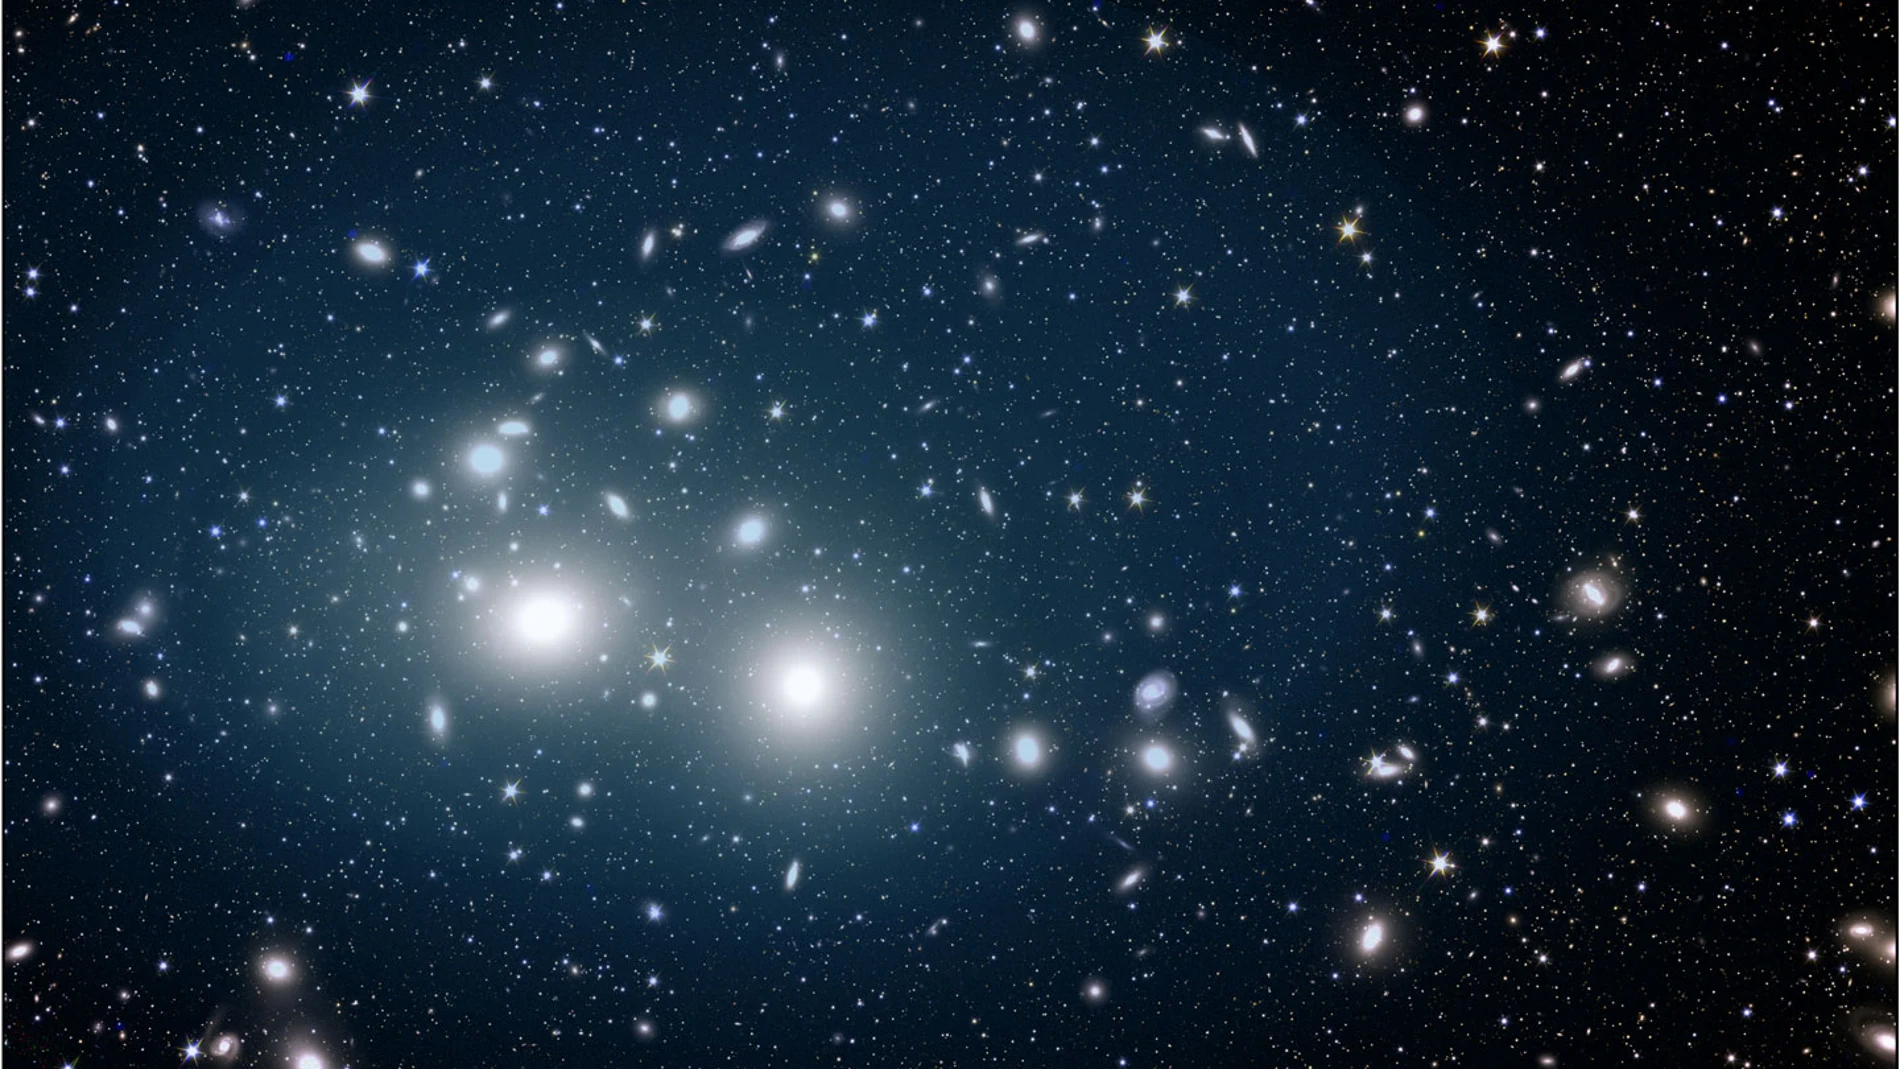 Esta imagen, capturada por el satélite Euclid, muestra el cúmulo de galaxias de Perseo bañado en una suave luz azul emanada de las estrellas huérfanas. Estas estrellas huérfanas están dispersas por todo el cúmulo, extendiéndose hasta 2 millones de años luz desde su centro. Las galaxias del cúmulo destacan como formas elípticas luminosas contra la oscura extensión del espacio. 